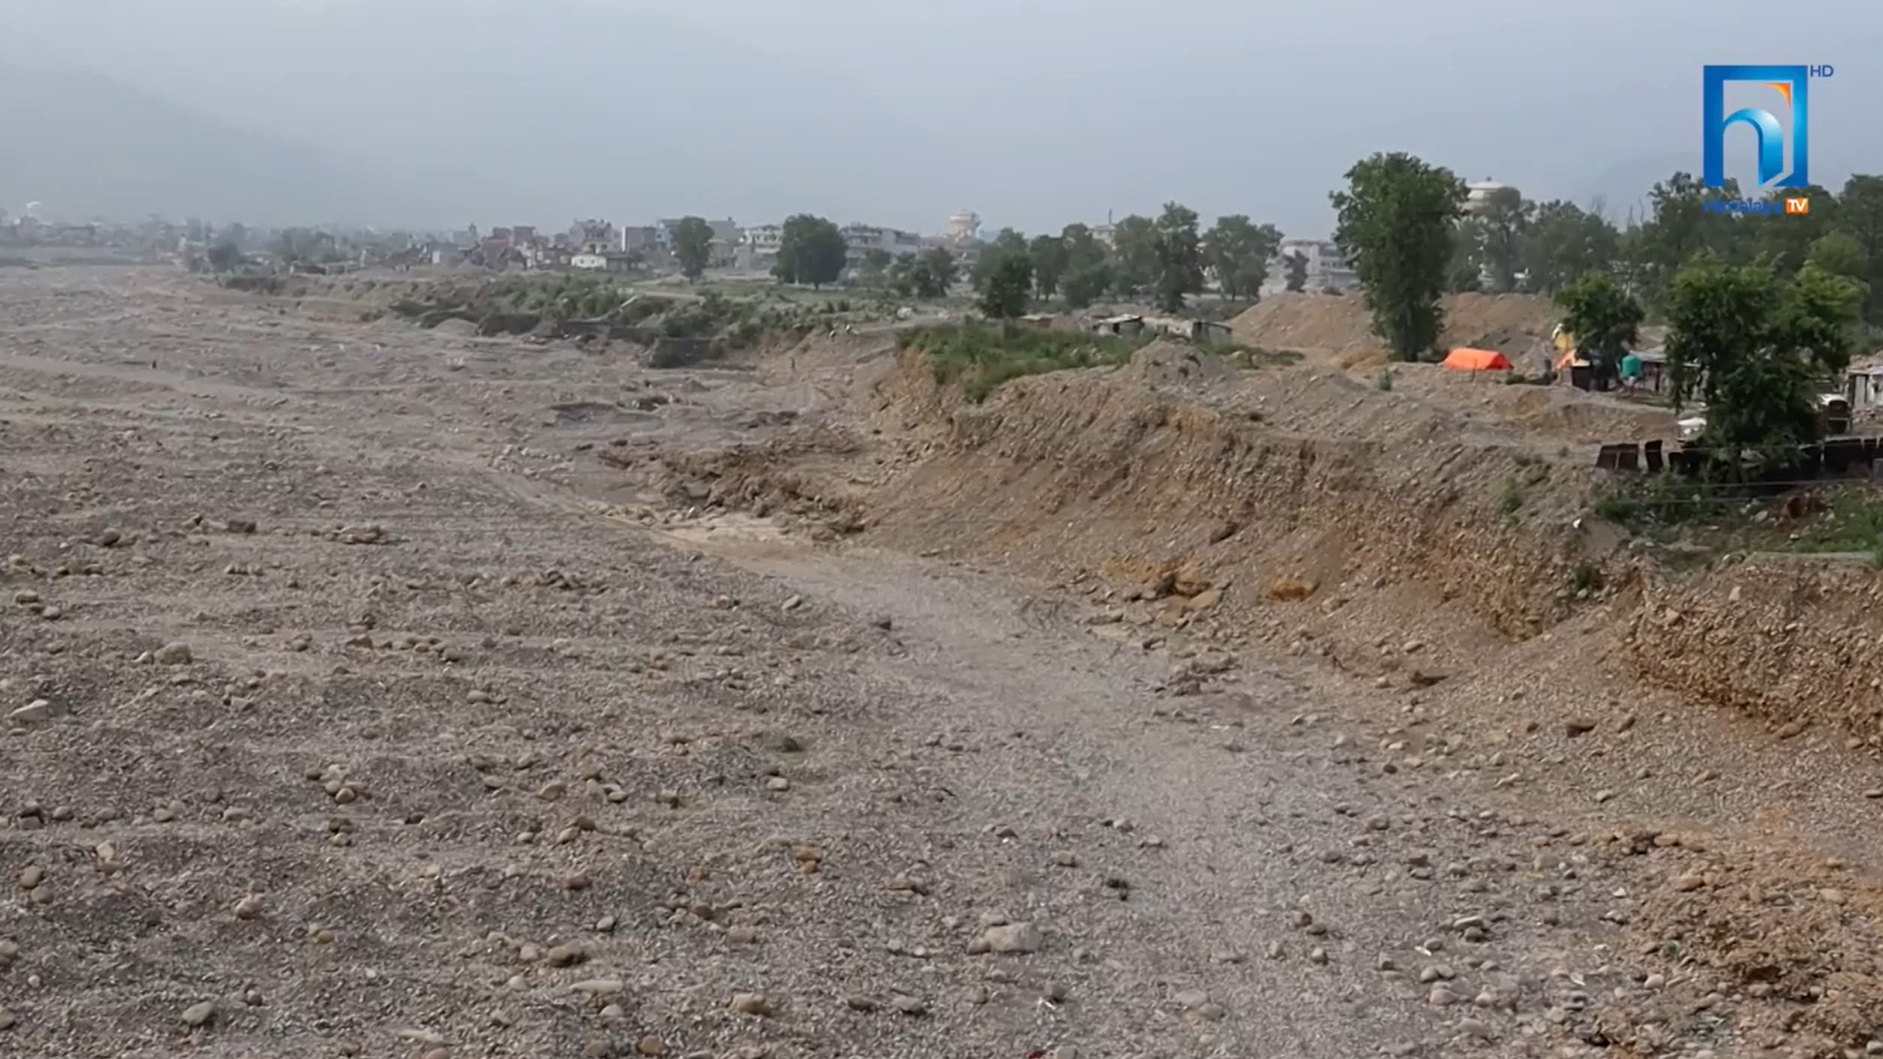 जथाभावी उत्खननले नदी वरपरका वस्ती नै जोखिममा  (भिडियो रिपोर्टसहित)